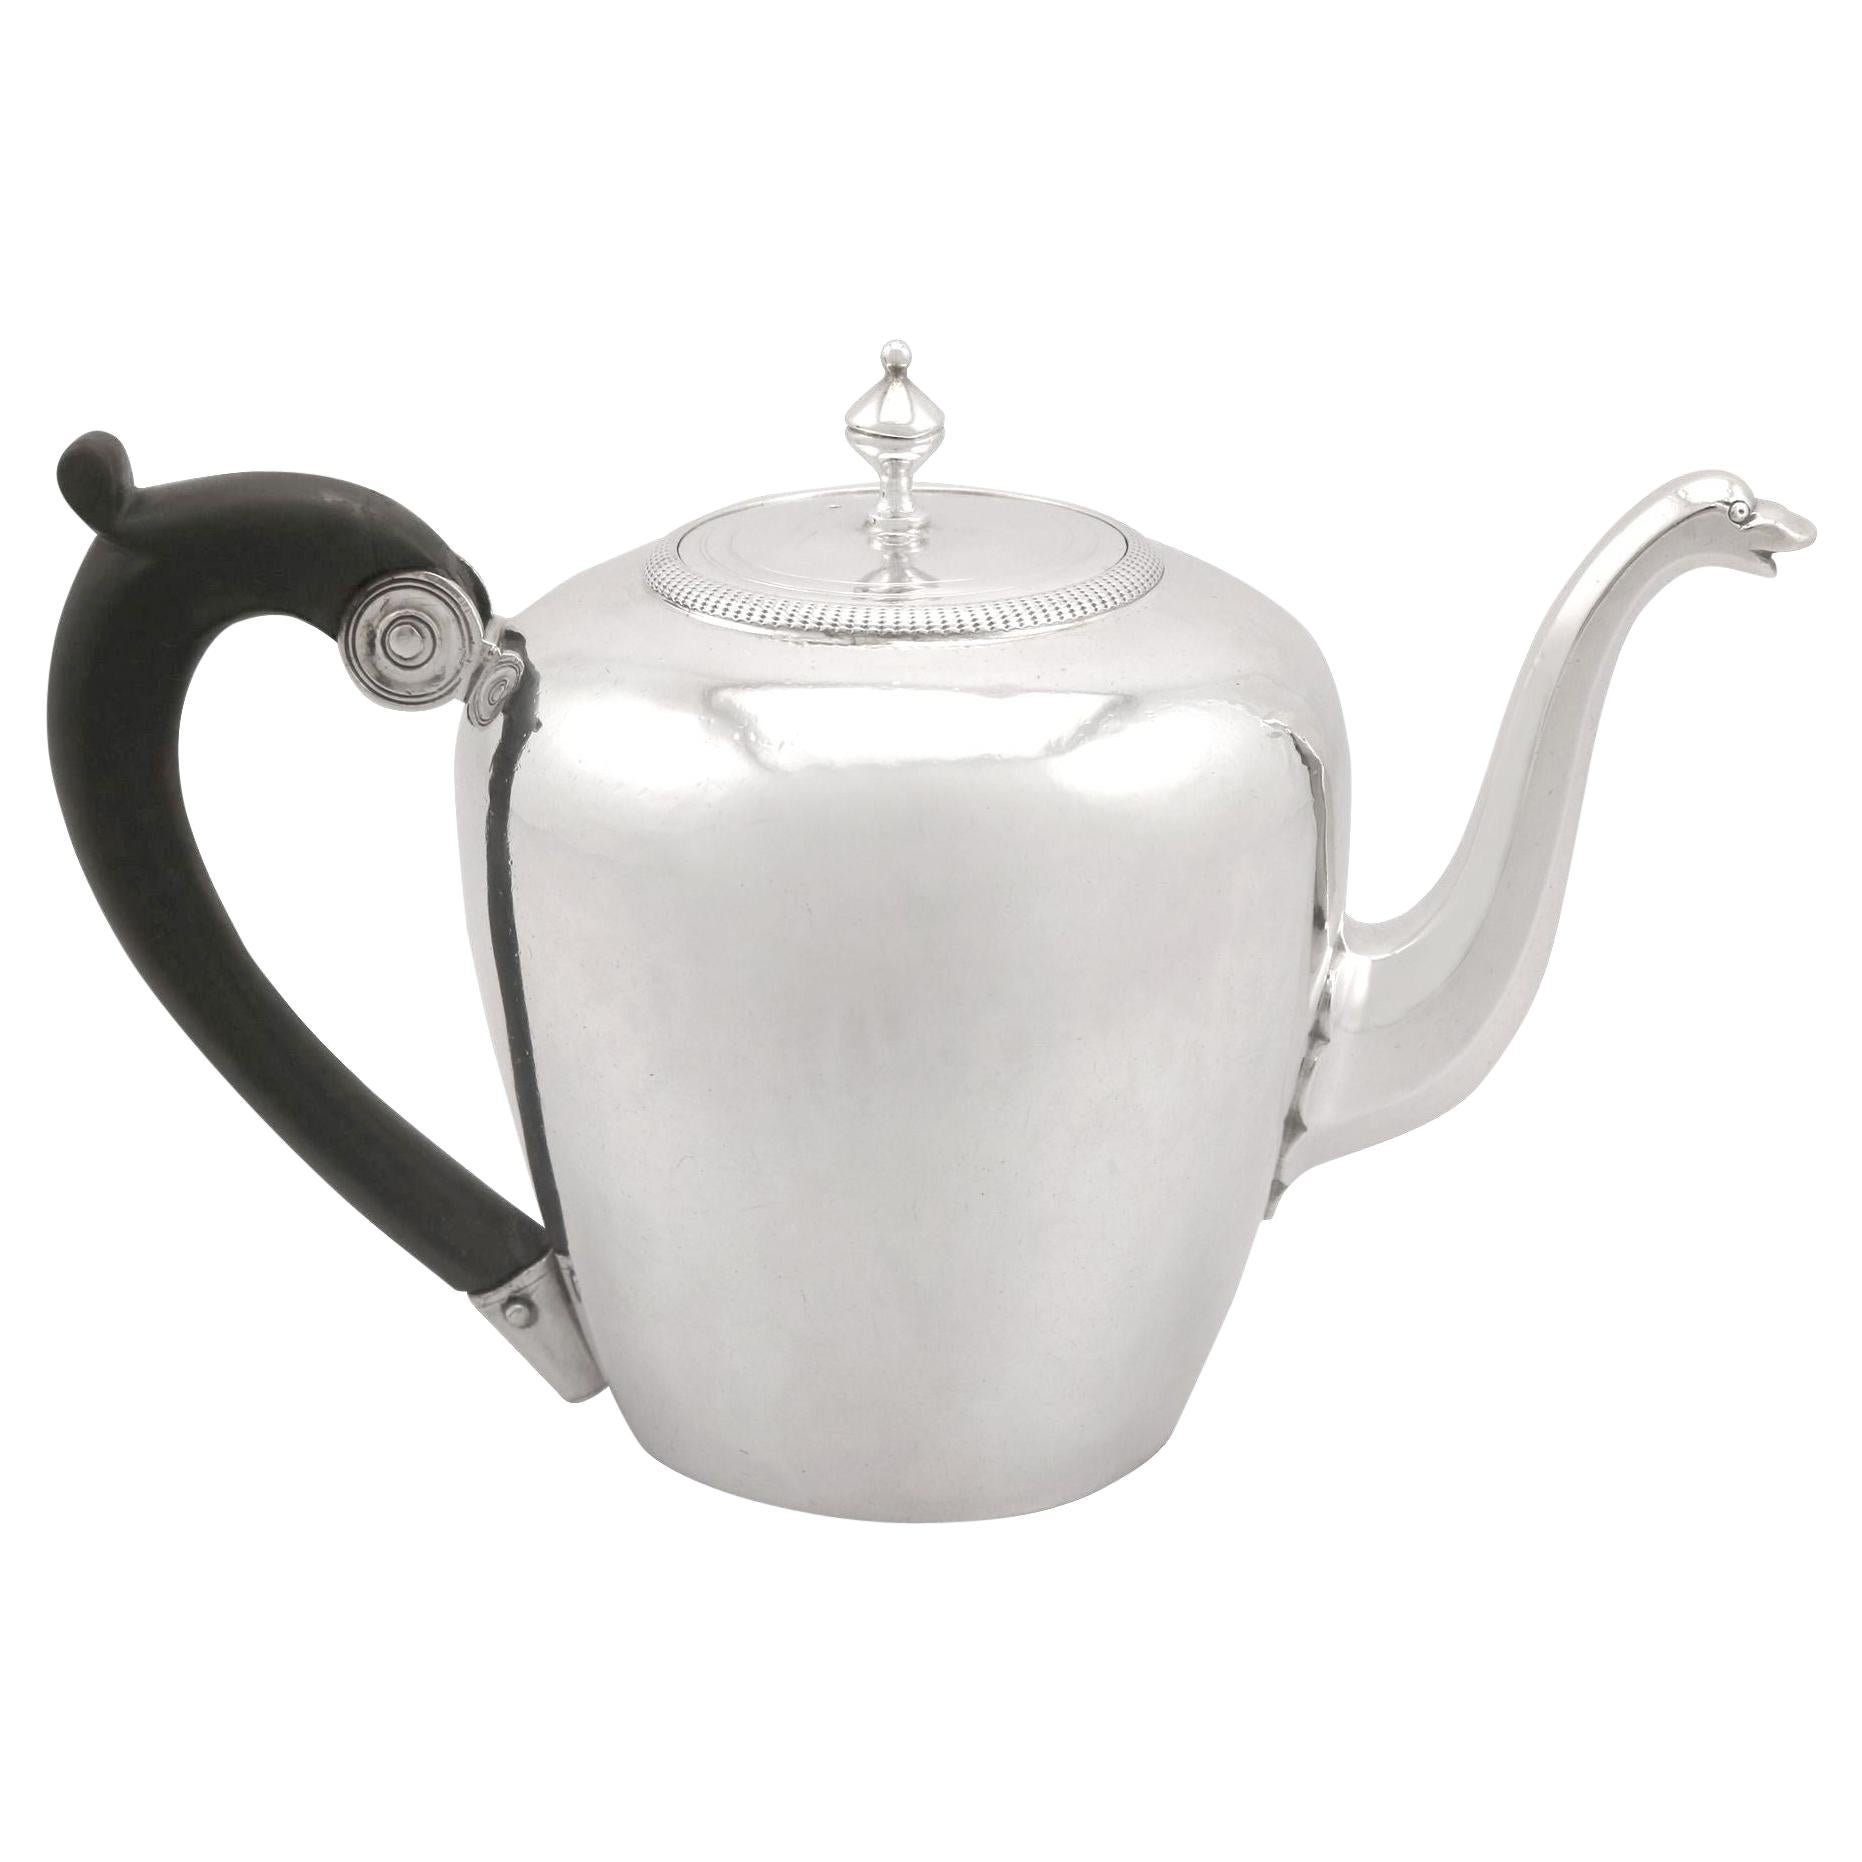 Antique French Silver Teapot, Circa 1789